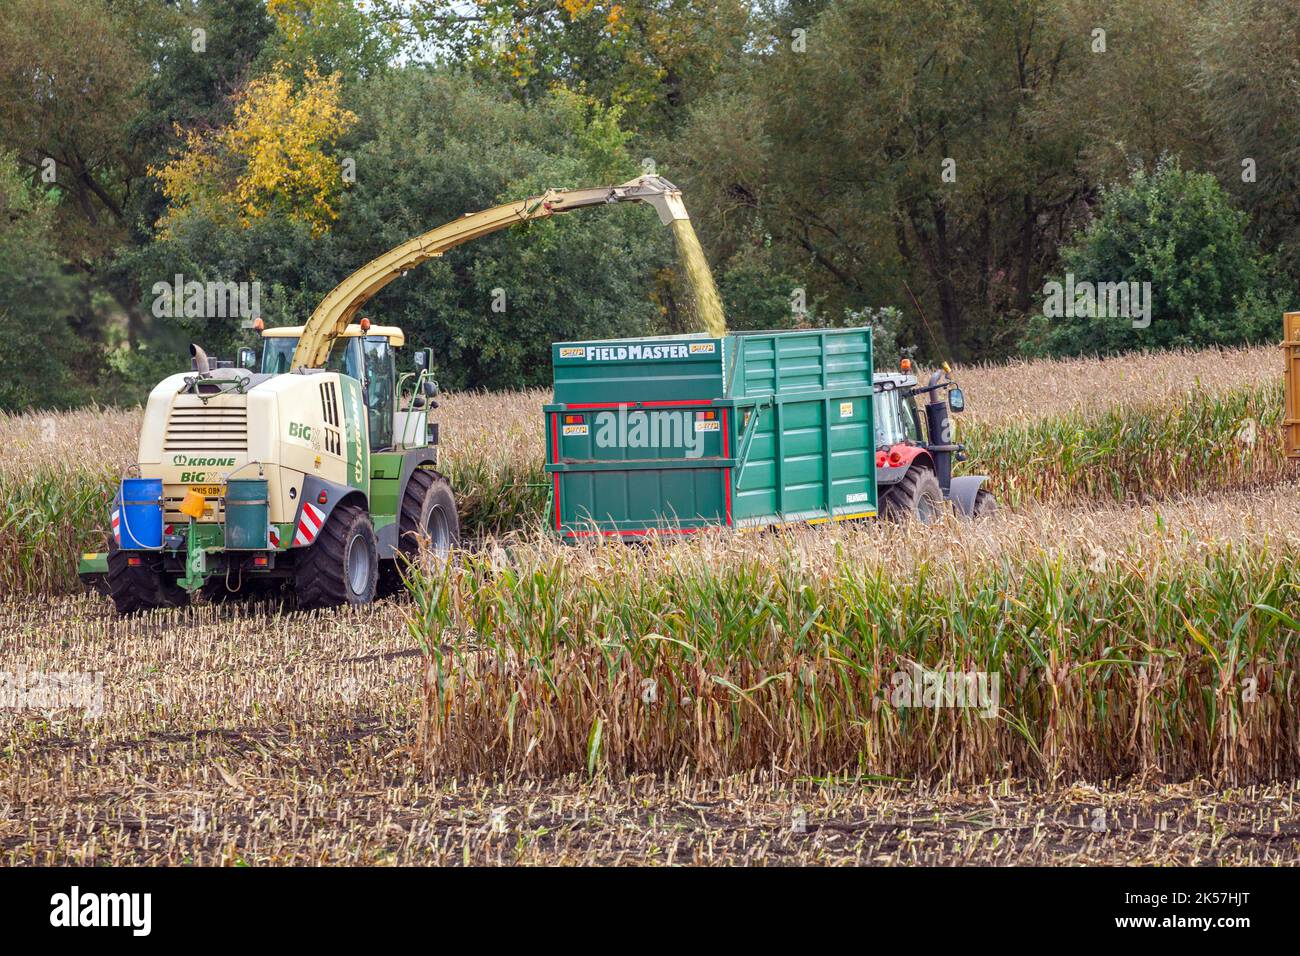 Agricoltore imprenditore agricolo lavoratore agricolo utilizzando Krone Big X 700 - foraggera semovente trebbiatrice, raccolta e taglio di mais in autunno Foto Stock